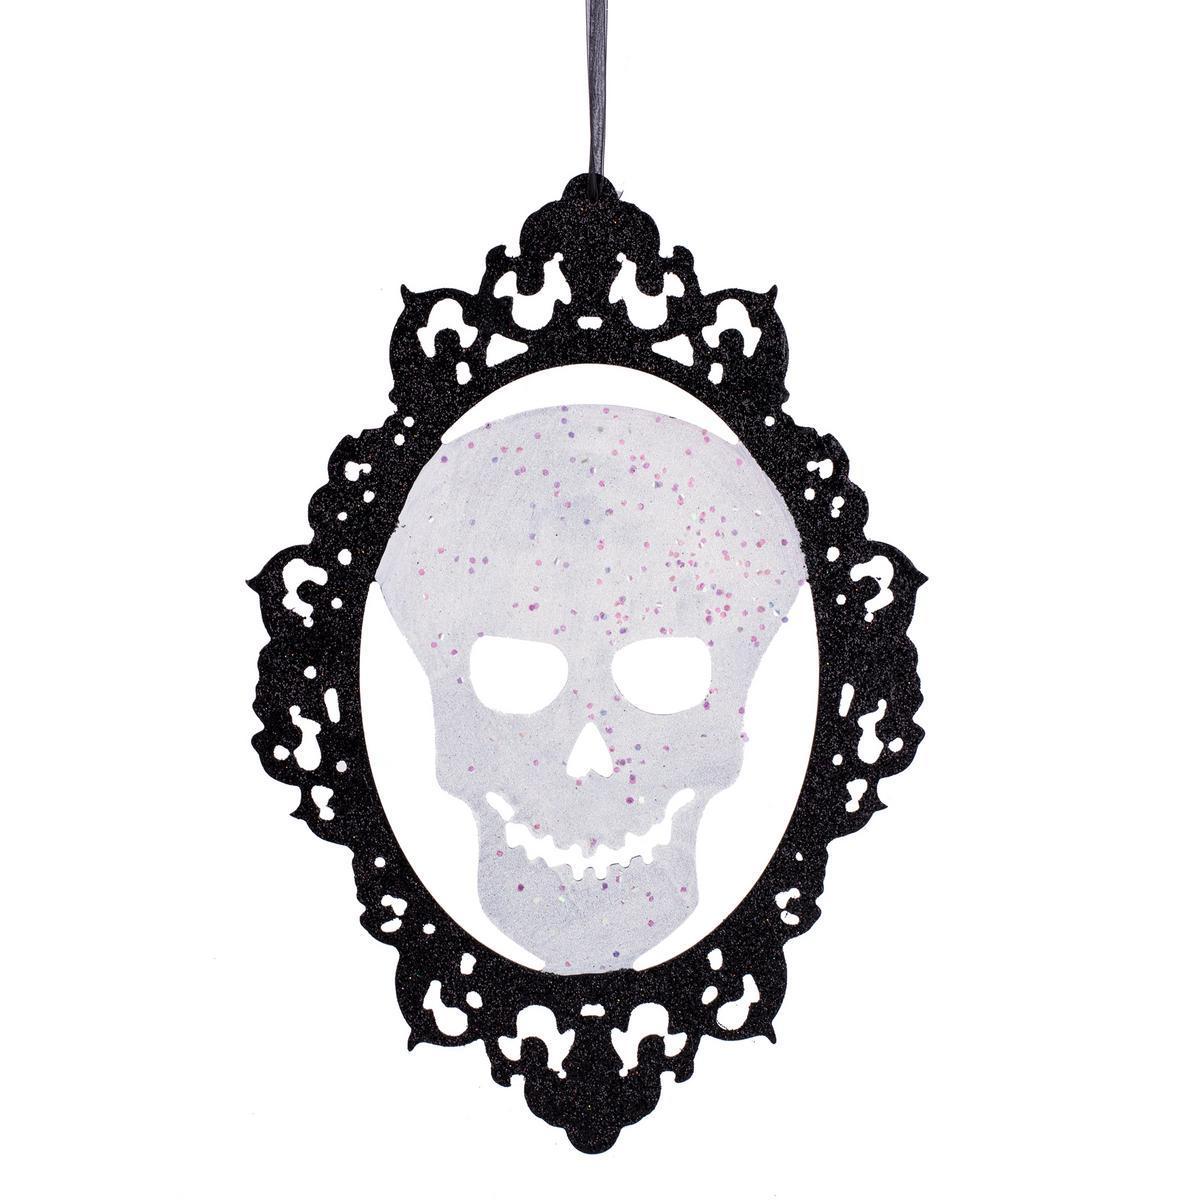 Décoration Halloween - MDF - - 0,3 x 28 x H 40 cm - Noir et blanc